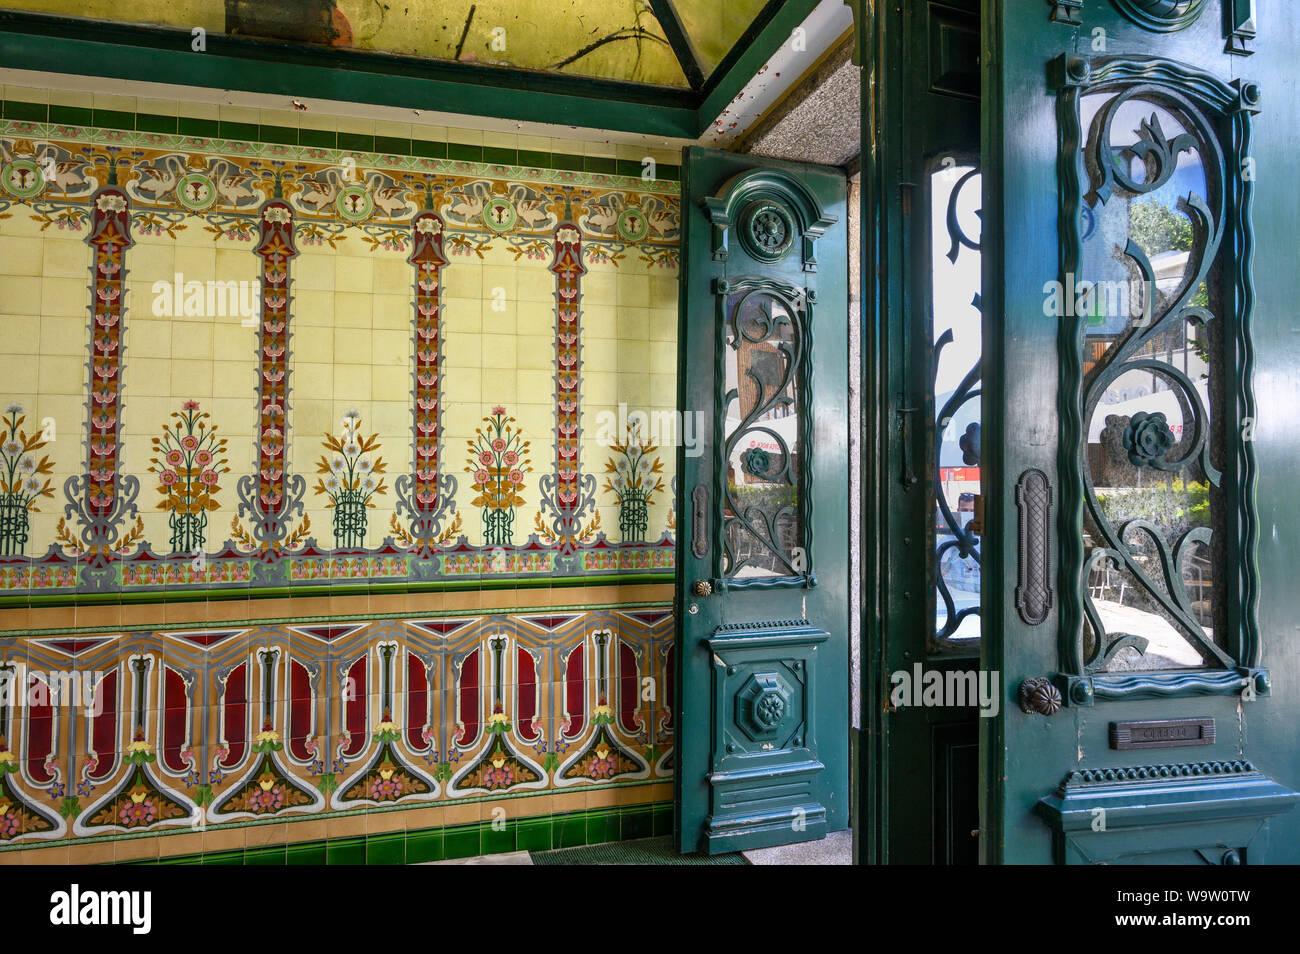 Hall d'entrée d'un bâtiment face à l'art nouveau aux couleurs vives de carreaux autour de 1900, dans le centre de Braga, au nord-ouest du Portugal. Banque D'Images